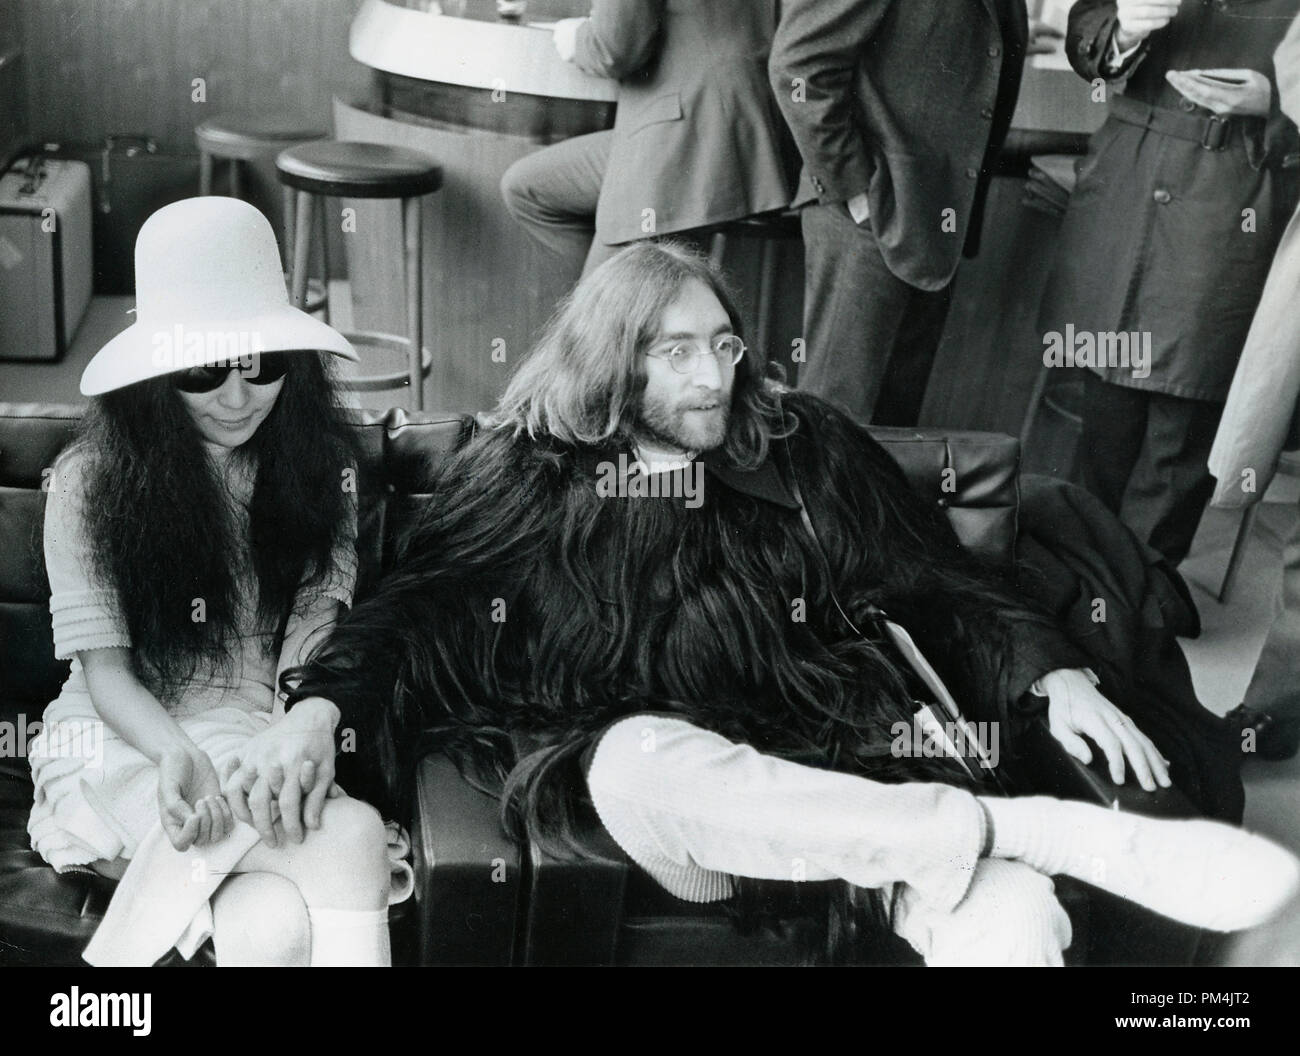 John Lennon et Yoko Ono de retour à Paris après leur mariage, mars 211969. John's manteau de cheveux humains et a été acheté pour 1 000 livres sterling. Référence # 1013 Fichier 031 THA © CCR /Le Hollywood Archive - Tous droits réservés. Banque D'Images